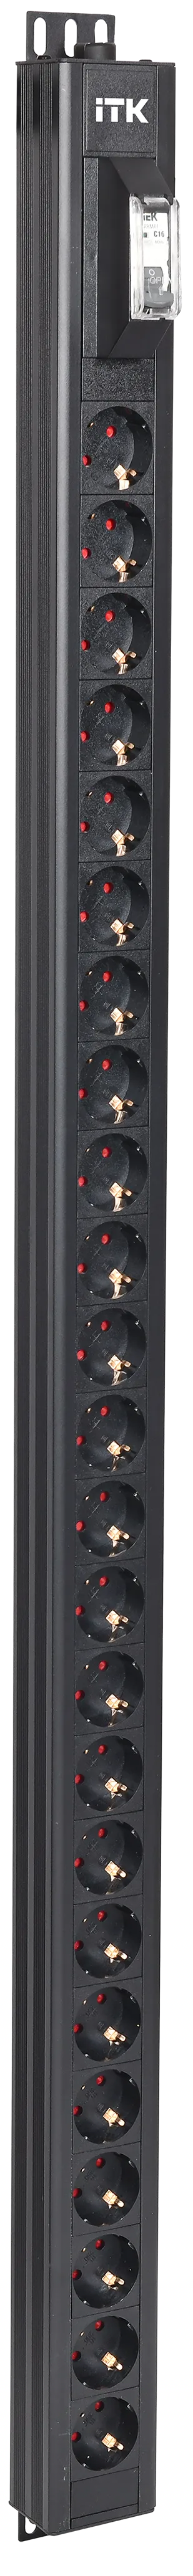 ITK BASE PDU вертикальный PV0102 30U 1 фаза 32А 24 розетки SCHUKO (немецкий стандарт) без кабеля с клеммной колодкой